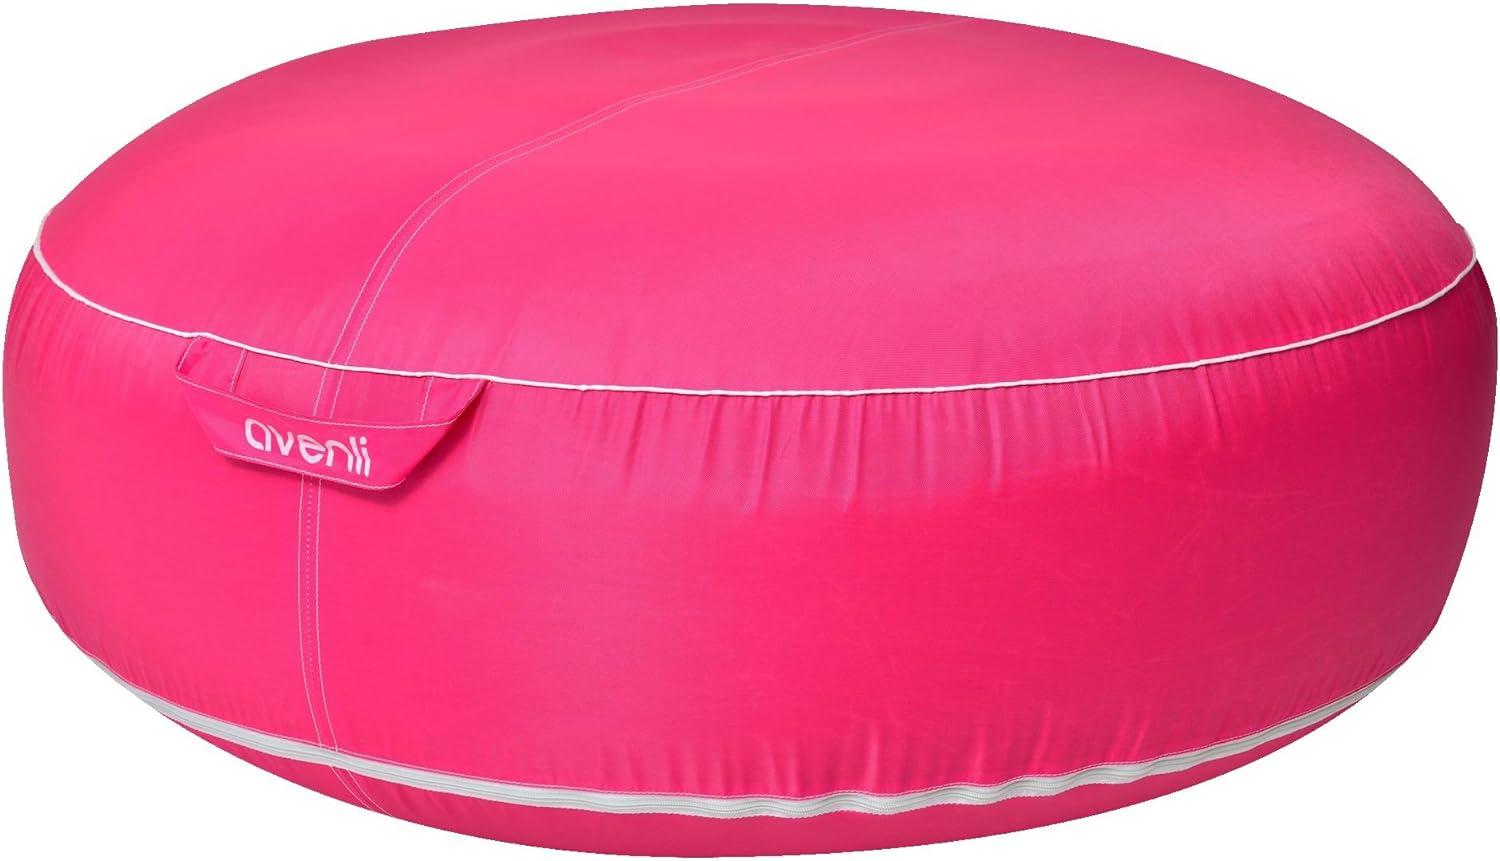 Jilong Campingstuhl Avenli Pouf Sitzkissen 98x38cm Sitzsack aufblasbar gewebeverstärkter Bezug wasserfest Outdoor pink Bild 1